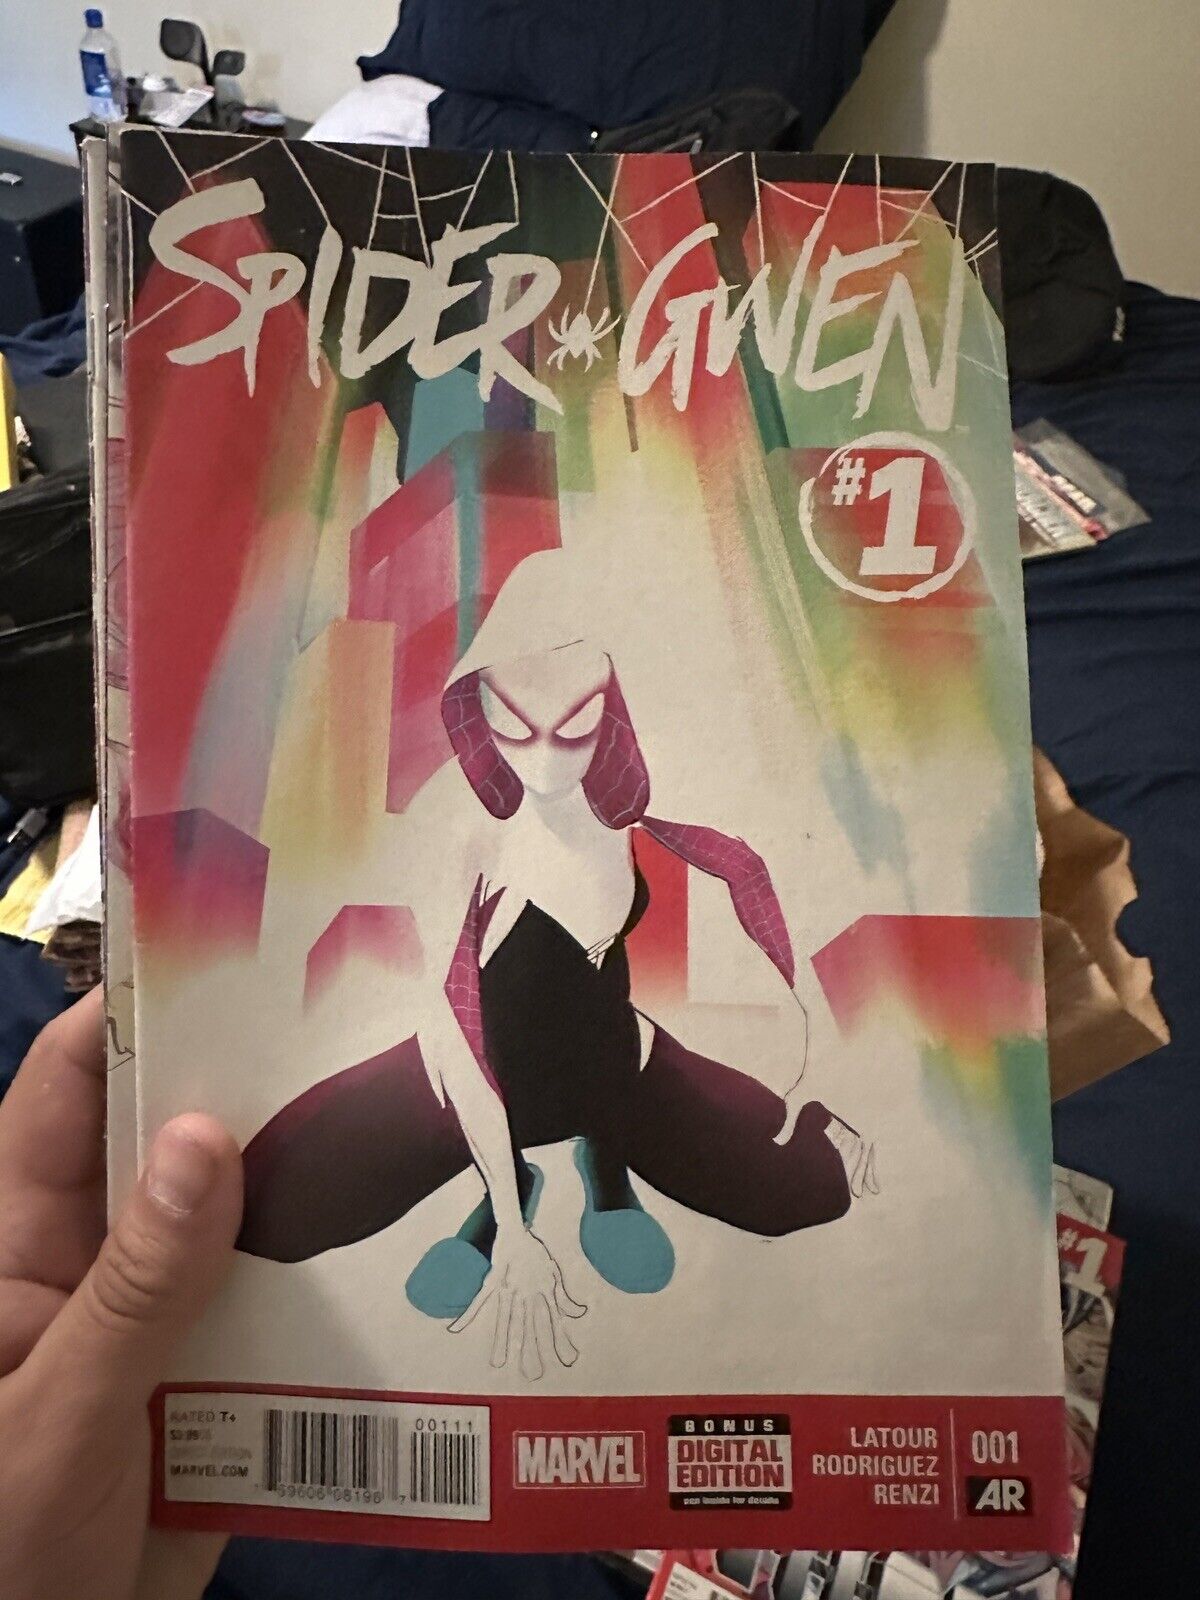 Spider-Gwen #1 (Marvel Comics April 2015)